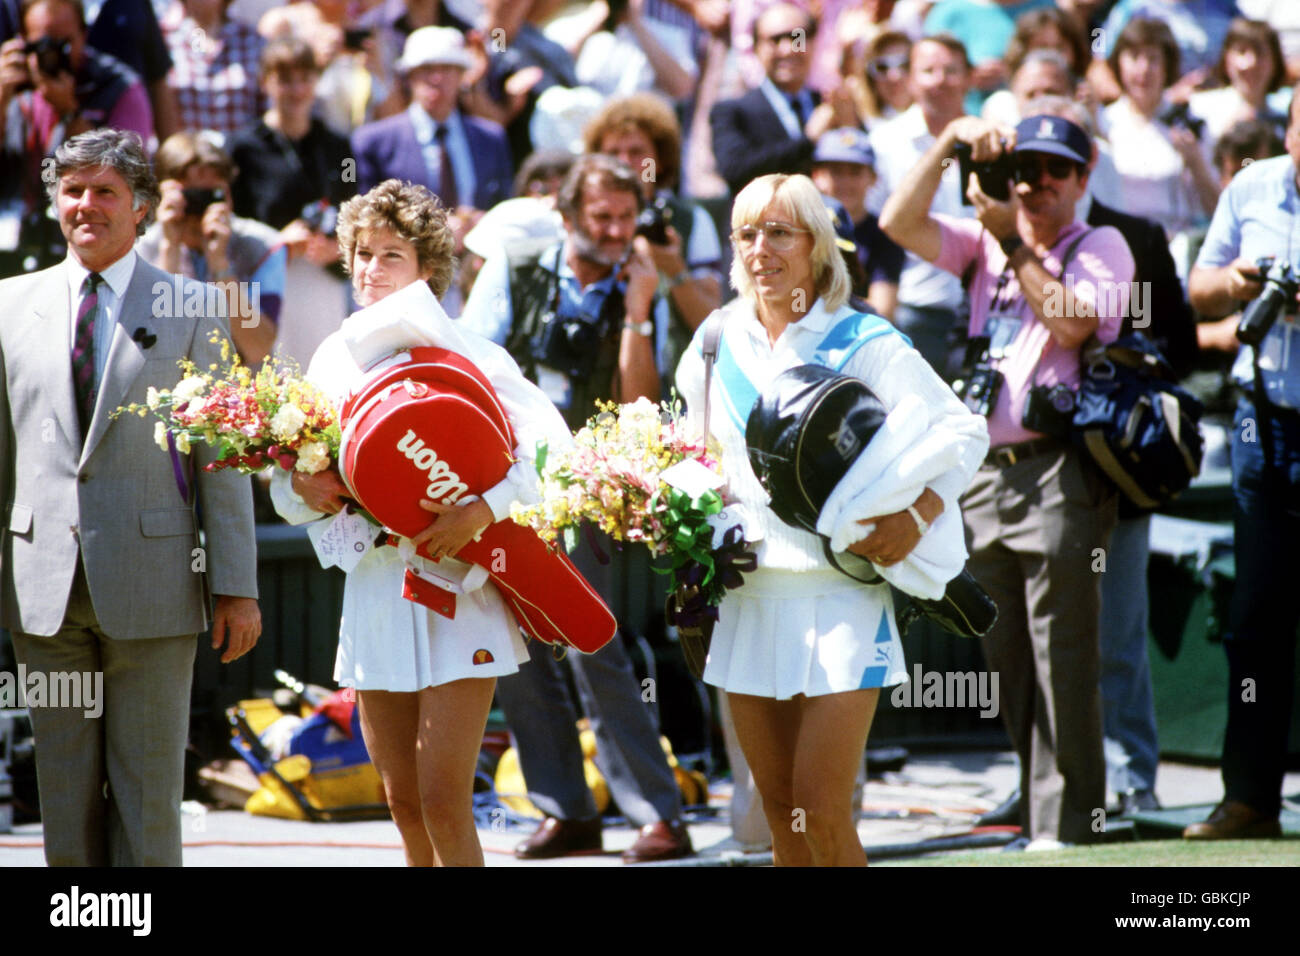 Tennis - Wimbledon Championships - Dames Singles - final - Martina Navratilova / Chris Evert Lloyd.Martina Navratilova (r) et Chris Evert Lloyd (l) marchent sur le terrain central, accompagnés de l'arbitre Alan Mills (l) Banque D'Images